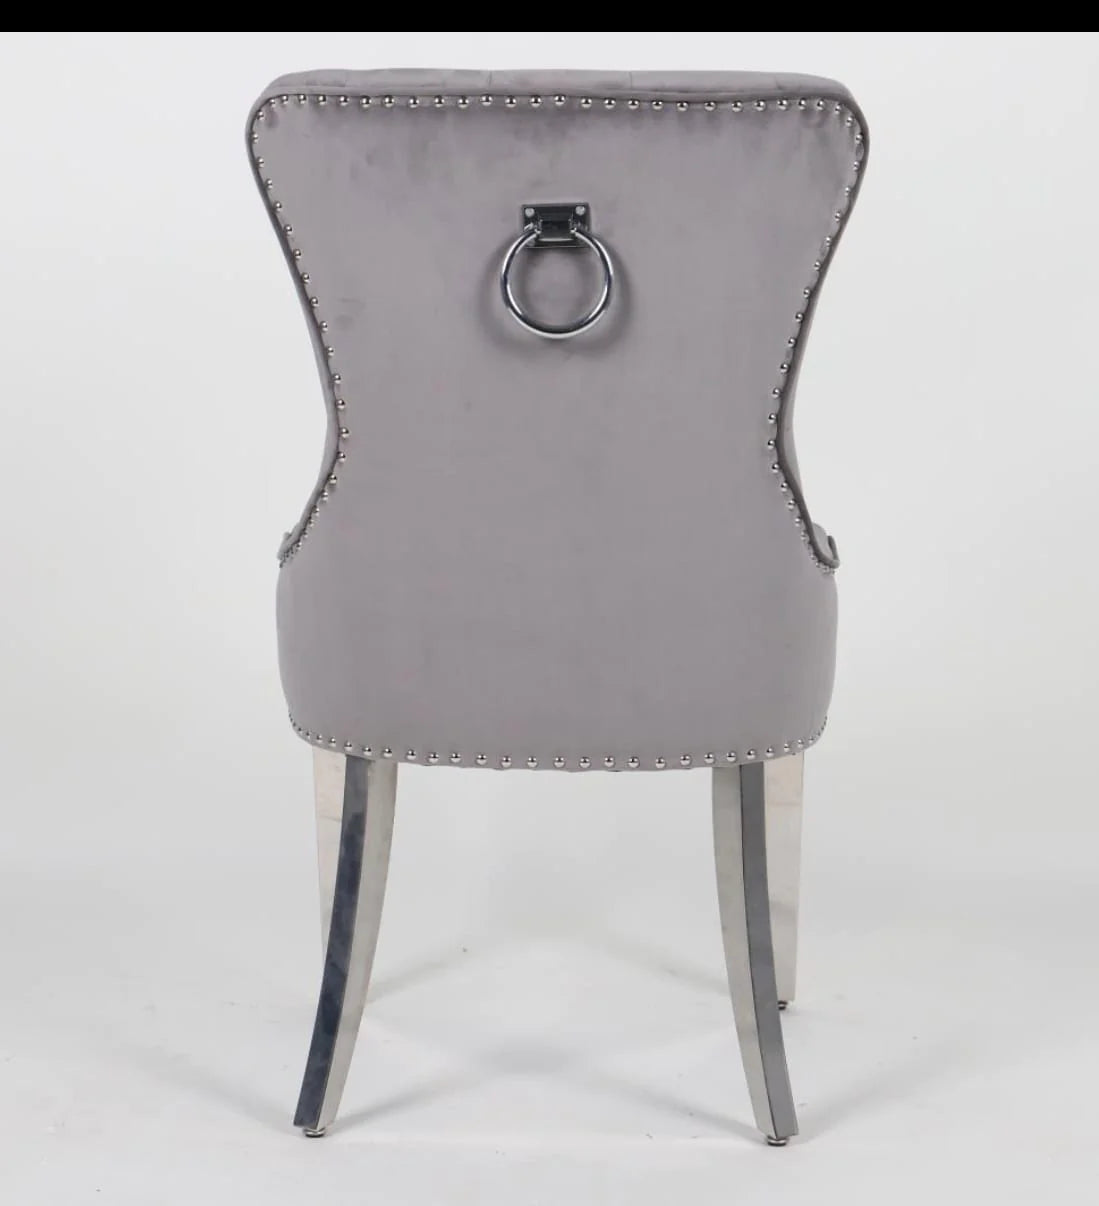 Chrome Ring Knocker Plain Back Tufted Plush Velvet Dining Chair Chrome Legs - 3 Colours